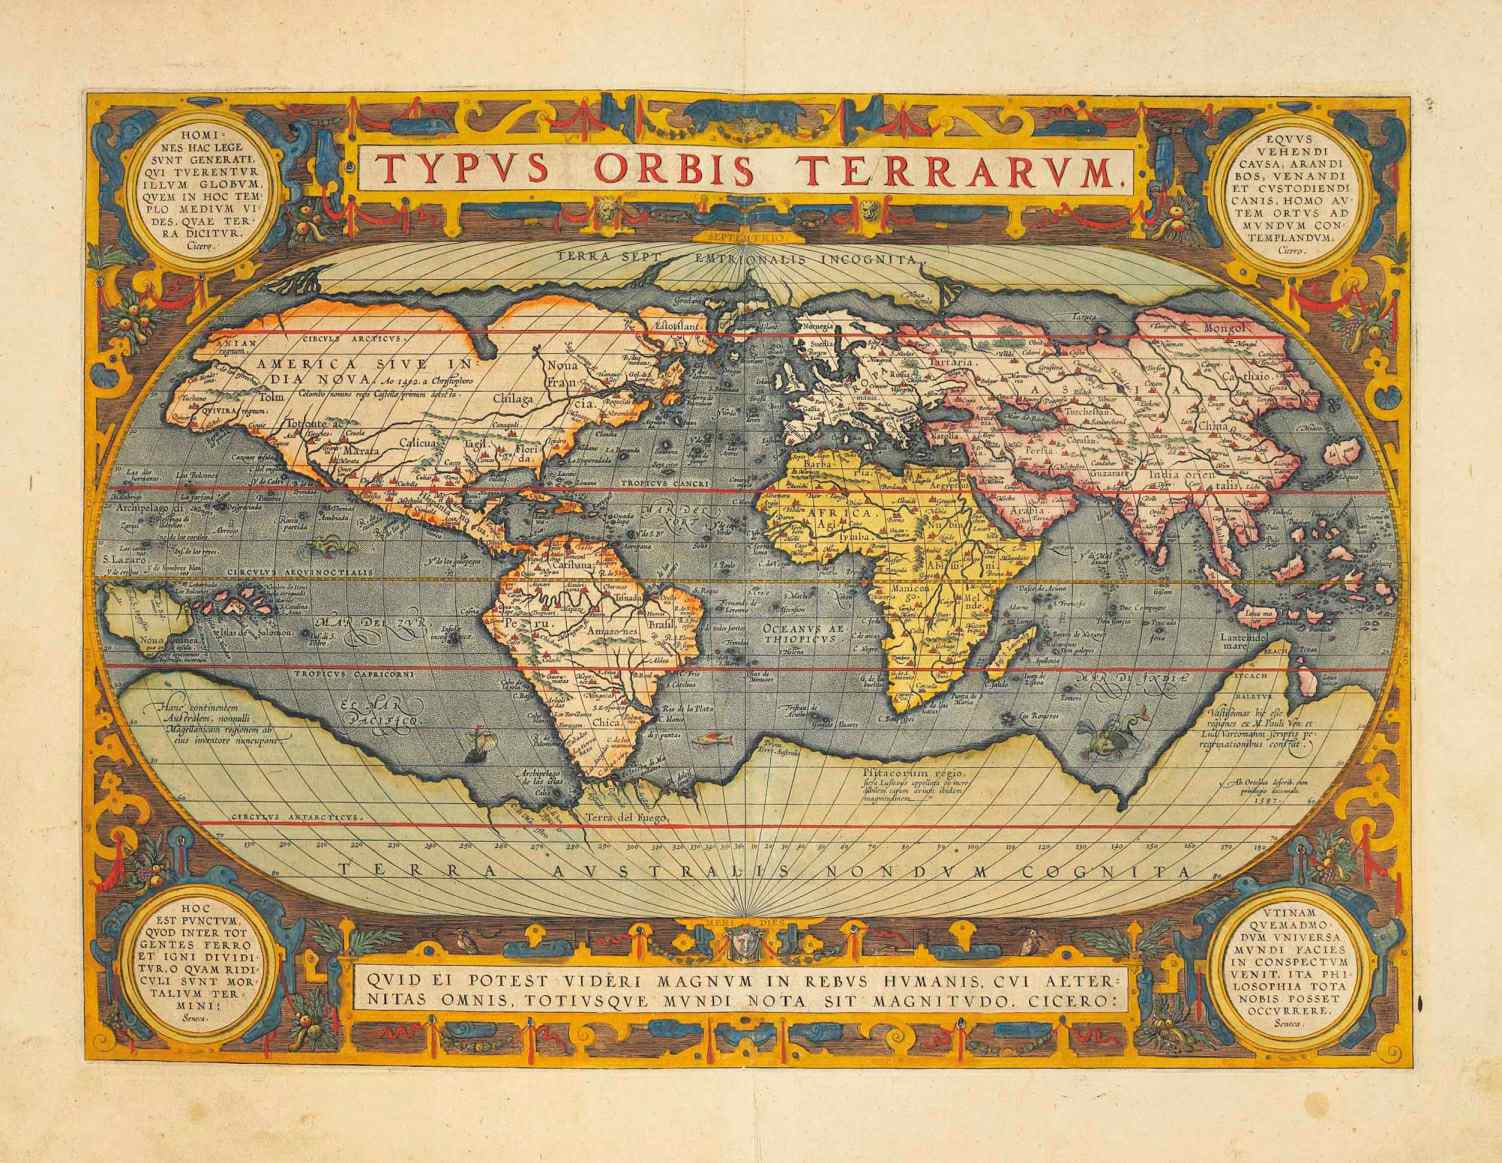 Sellel 1570. aasta kaardil on Hyperborea näidatud Arktika mandrina ja seda kirjeldatakse kui "Terra Septemtrionalis Incognita" (tundmatu põhjamaa).